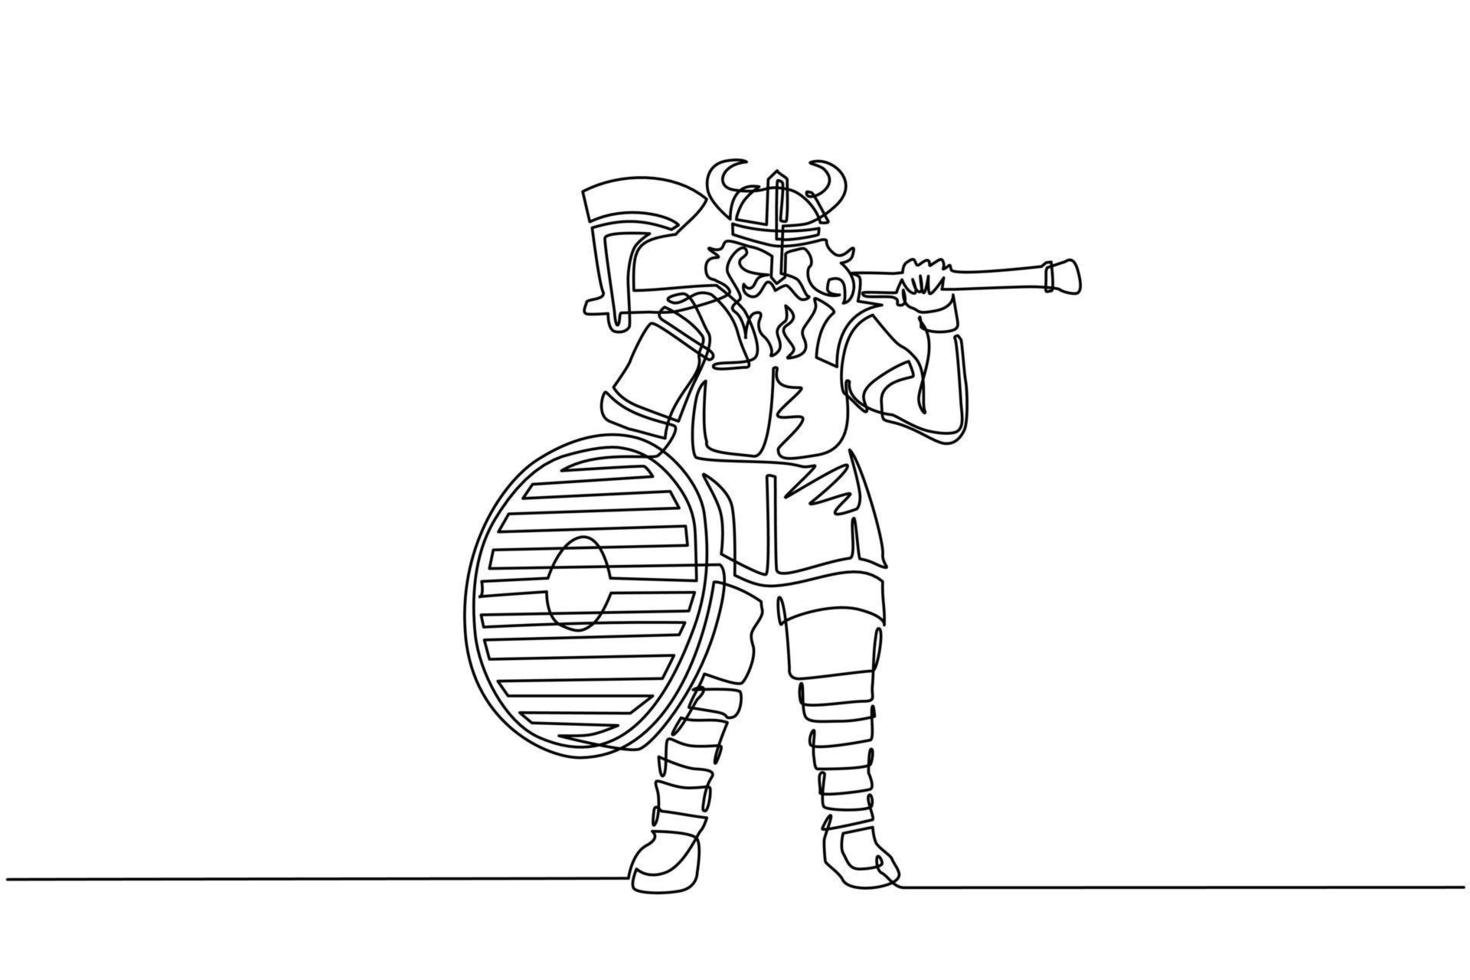 único desenho de linha contínua norseman viking guerreiro raider bárbaro usando capacete com chifres com barba segurando machado e escudo em fundo branco isolado. ilustração vetorial de design de desenho de uma linha vetor